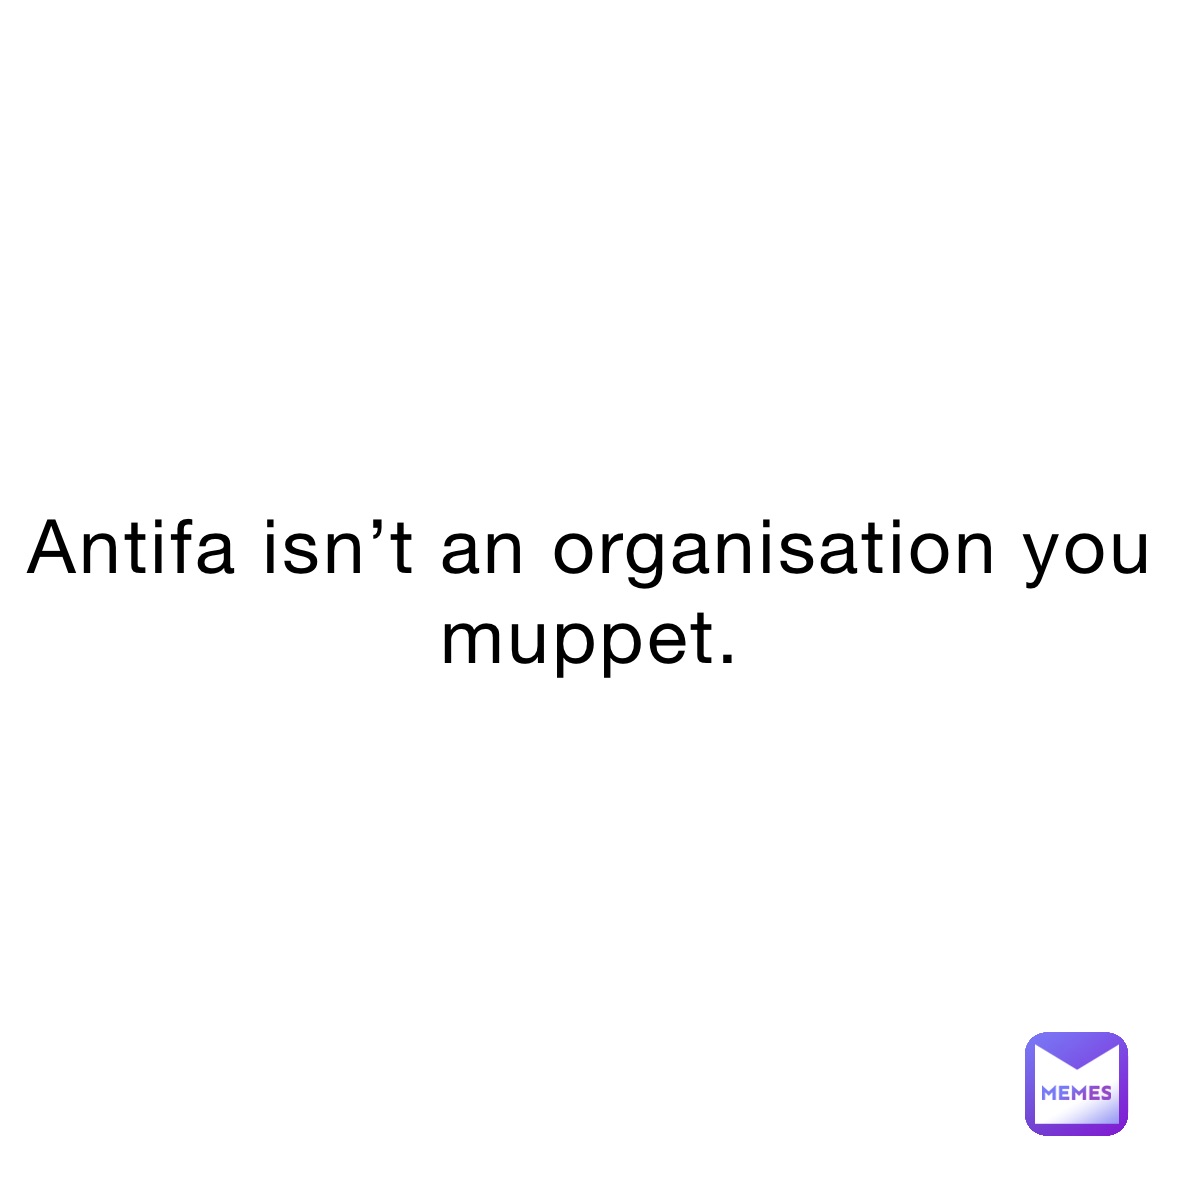 Antifa isn’t an organisation you muppet.